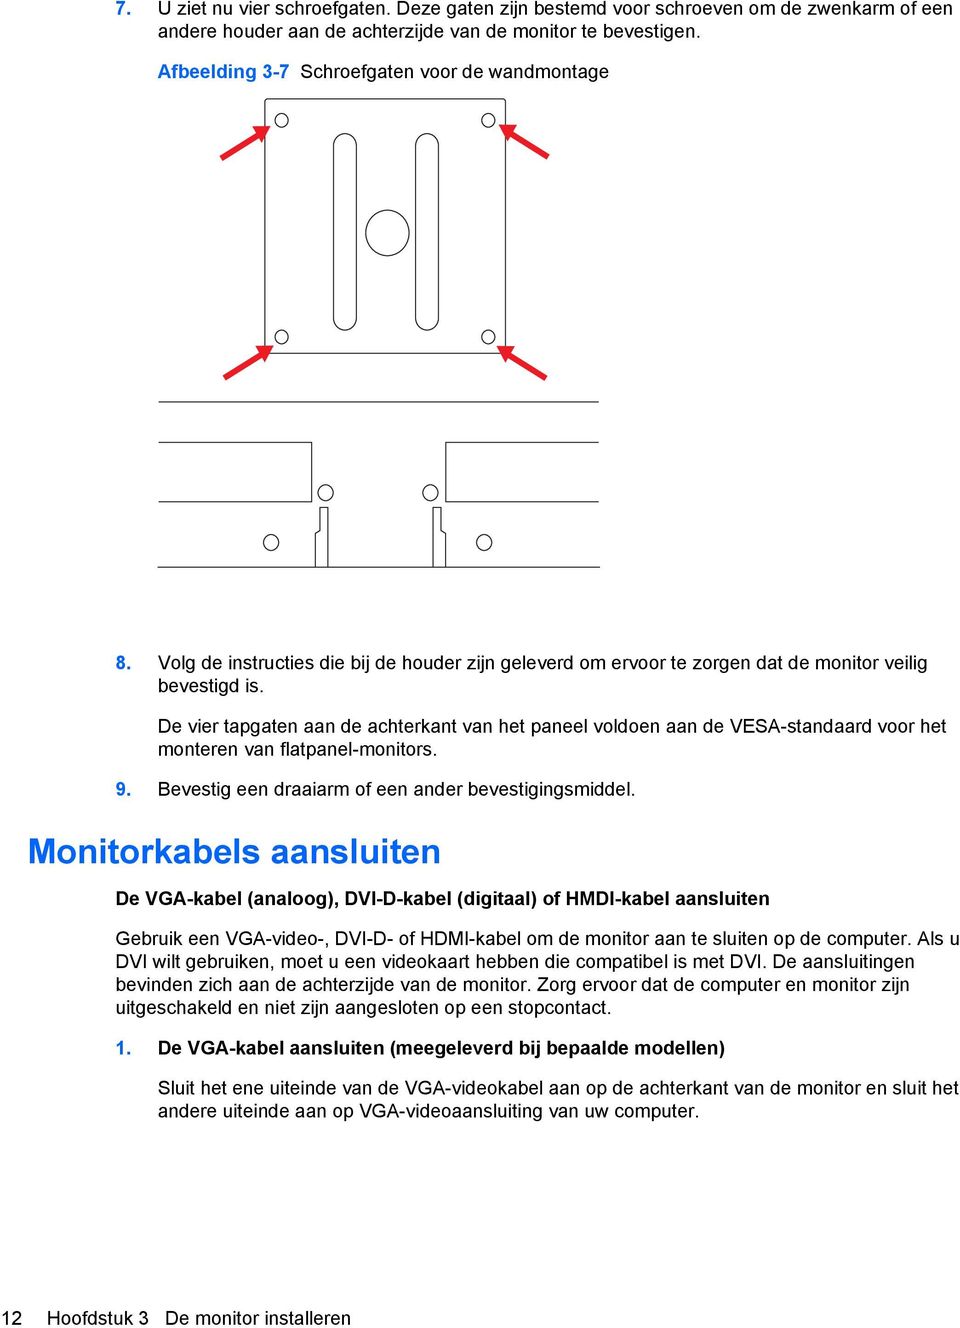 De vier tapgaten aan de achterkant van het paneel voldoen aan de VESA-standaard voor het monteren van flatpanel-monitors. 9. Bevestig een draaiarm of een ander bevestigingsmiddel.